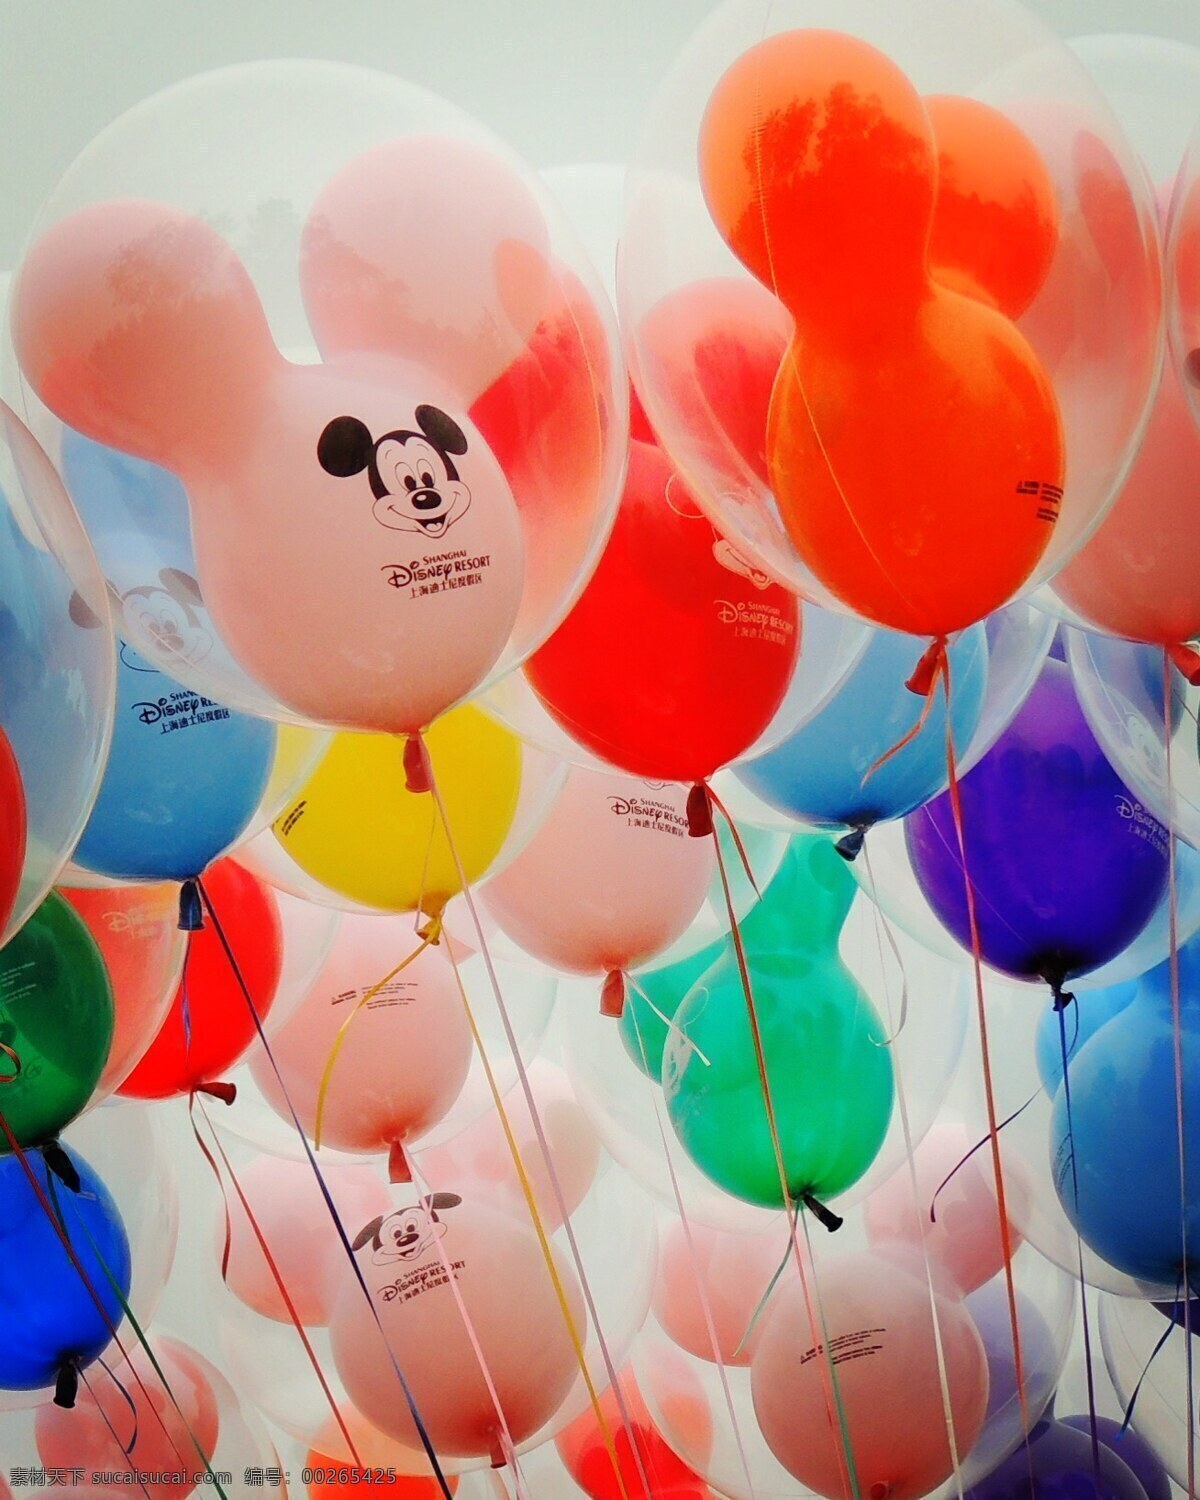 上海迪士尼 迪士尼乐园 世界级乐园 disney 上海 旅游摄影 游乐项目 气球 彩色气球 米奇 雕像 卡通人物 城堡 迪士尼人物 巡游 国内旅游 旅游 旅行